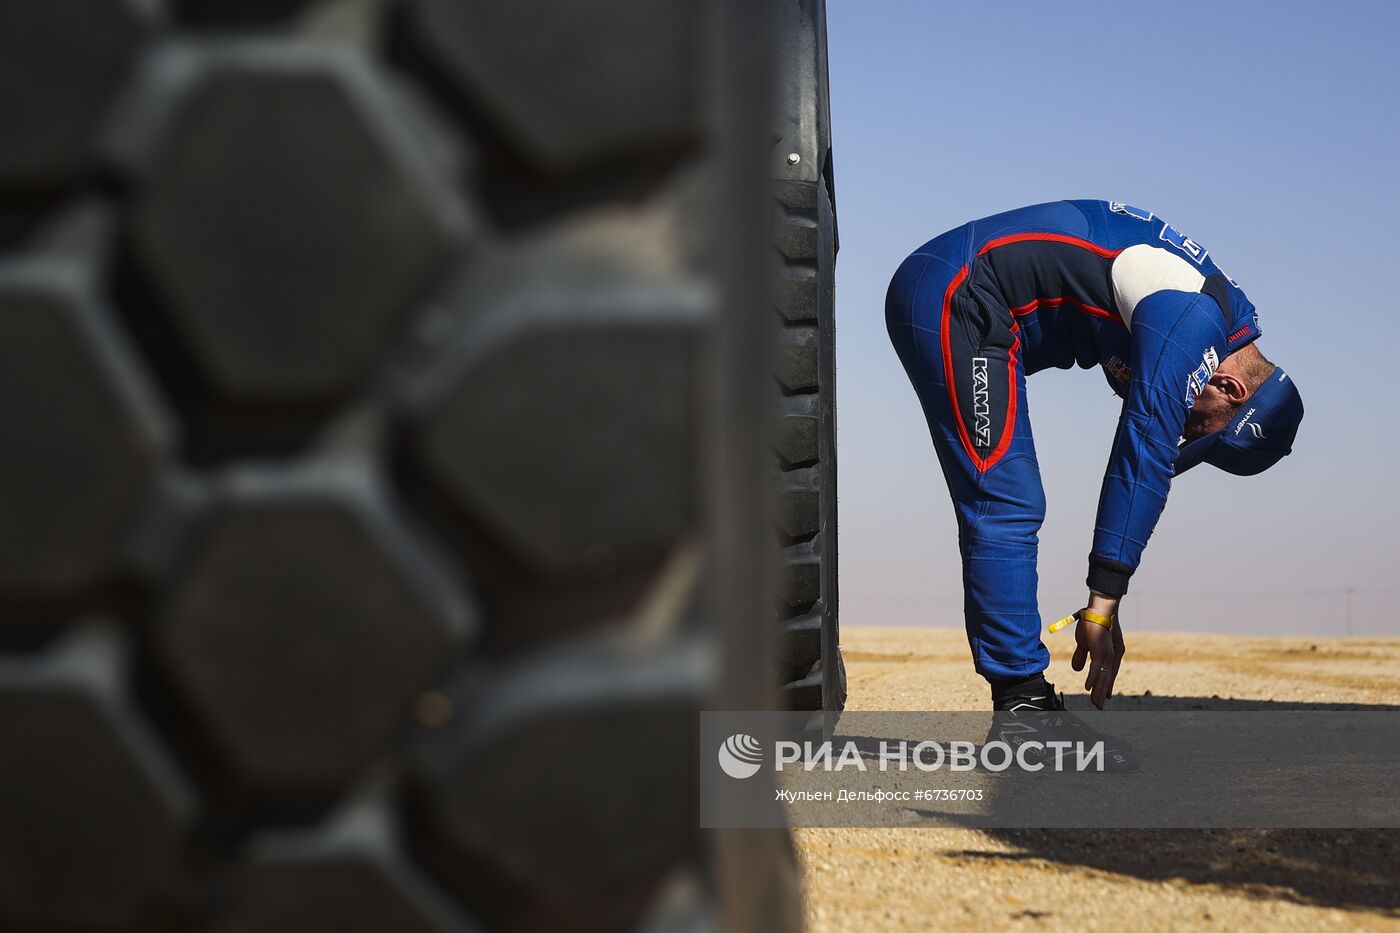 Выступление спортивной команды "КАМАЗ-мастер" на ралли-марафоне "Дакар"